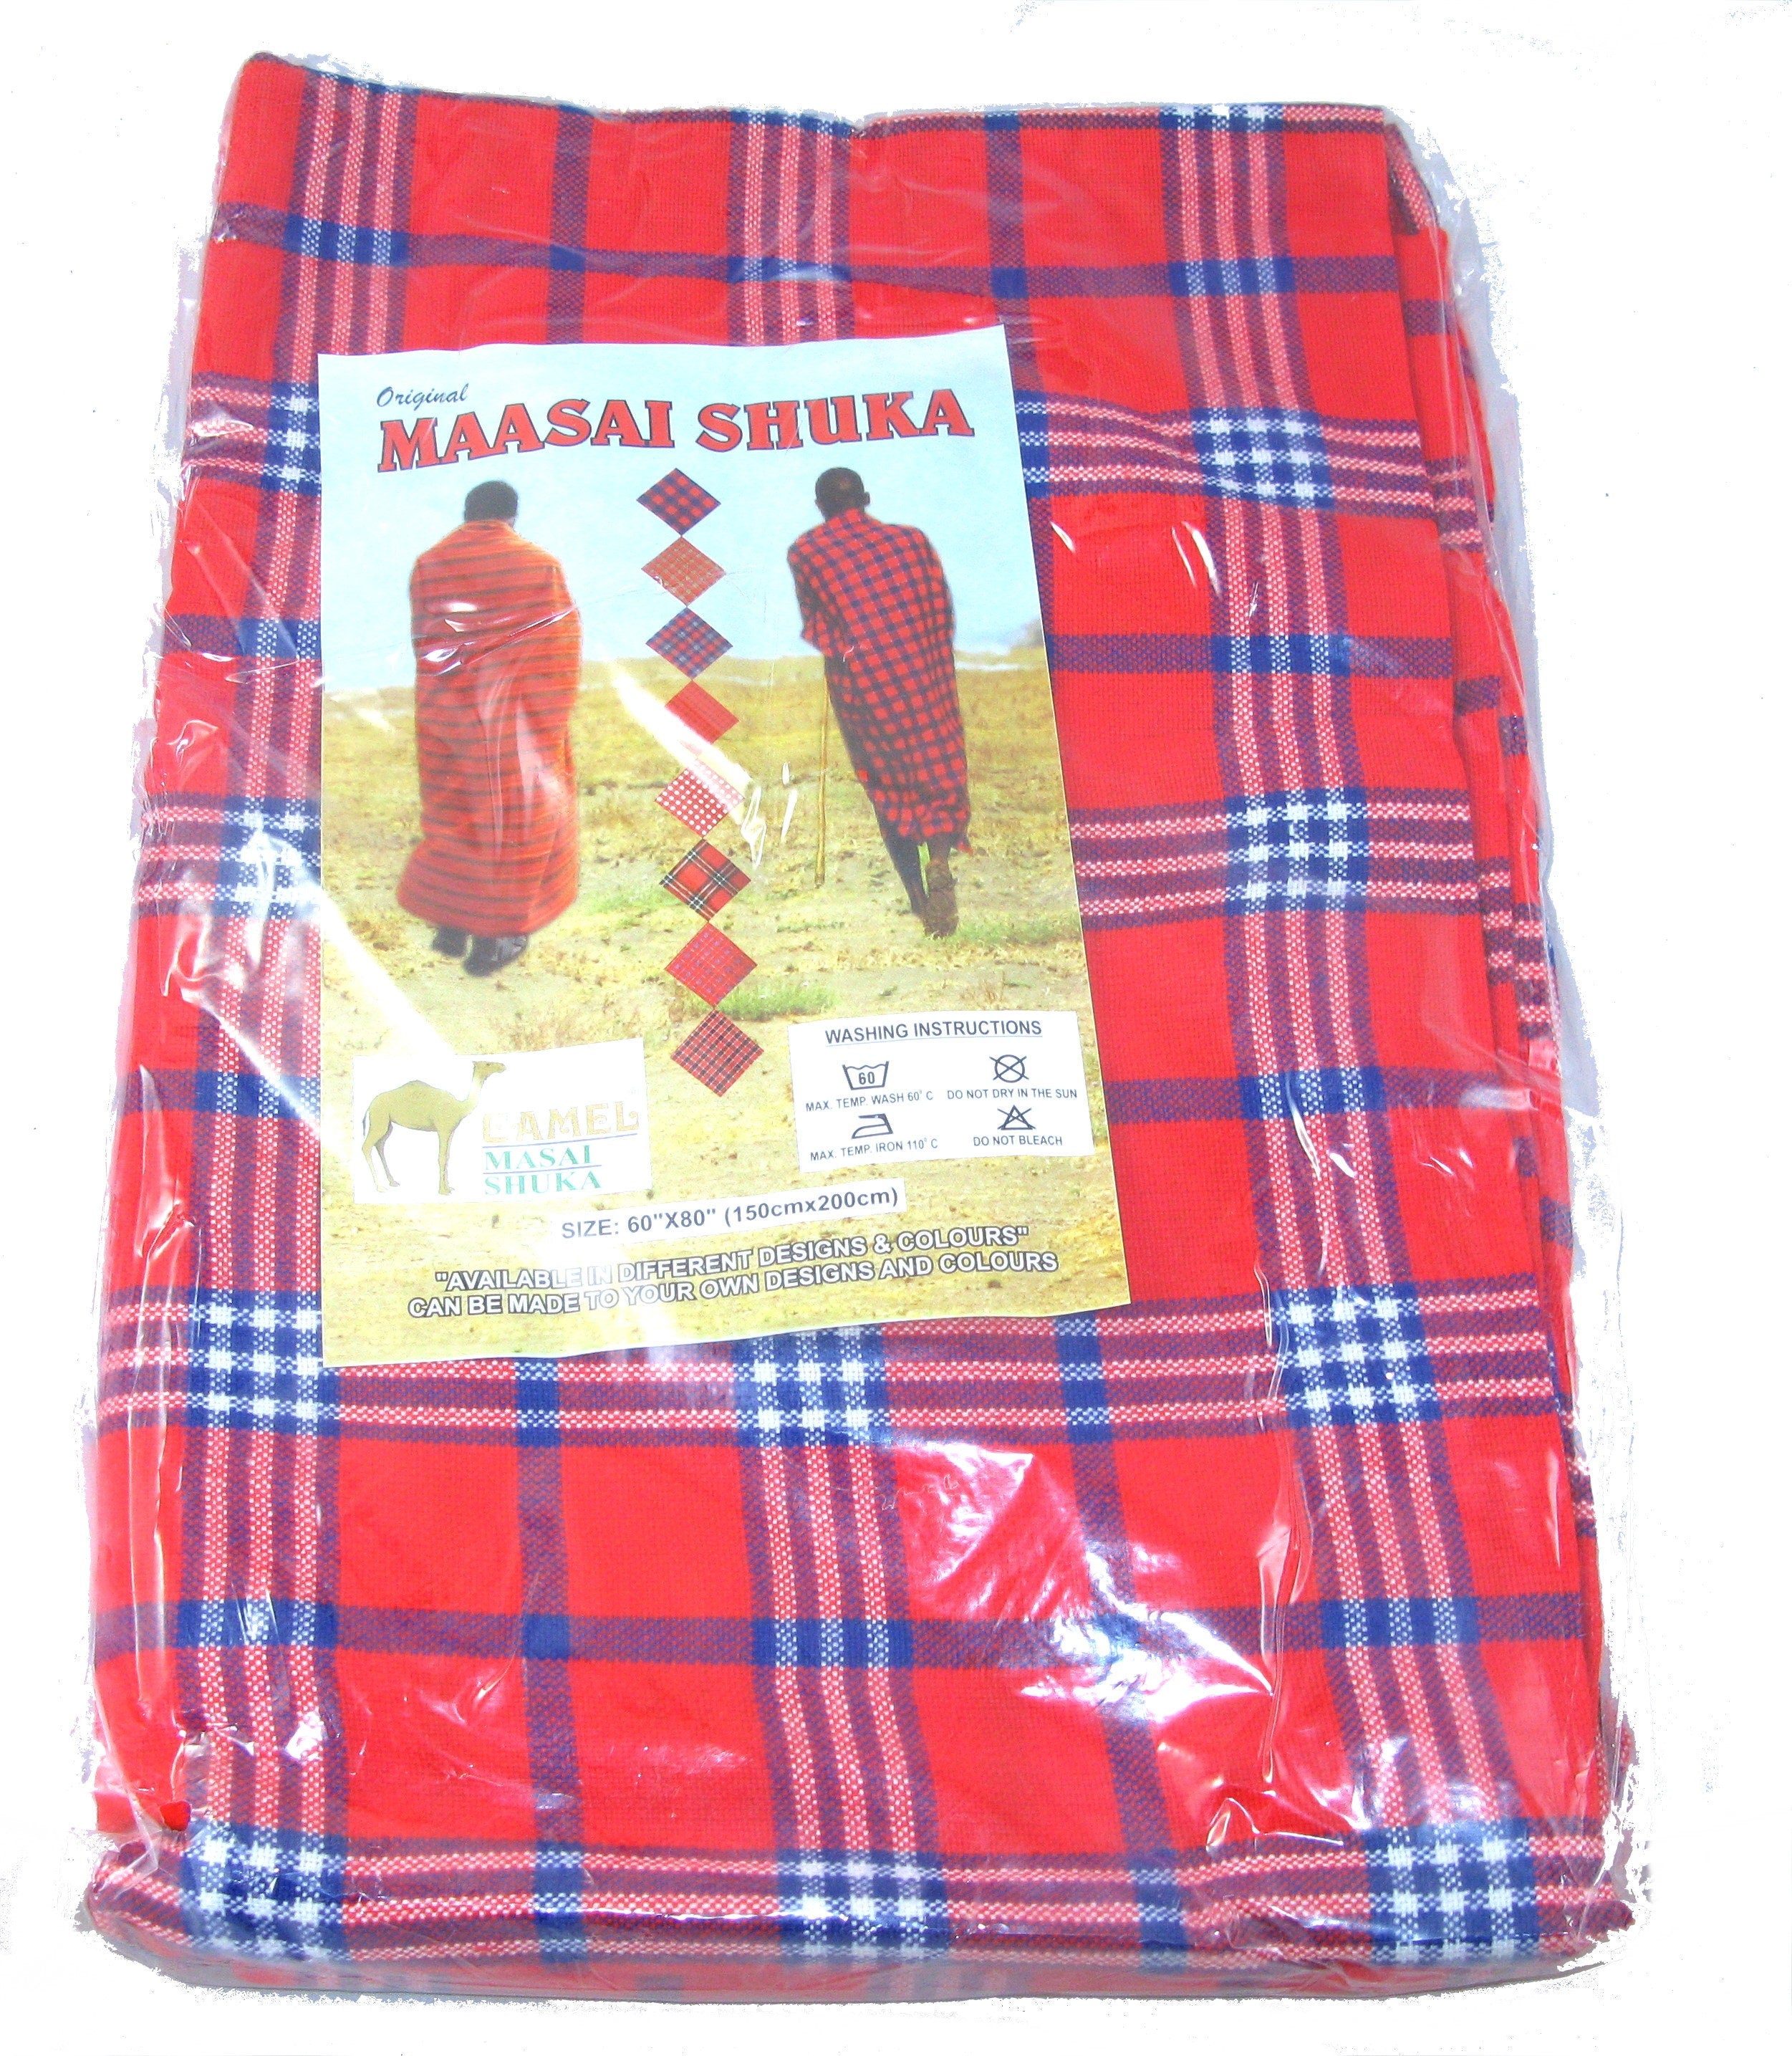 Original Maasai Shuka